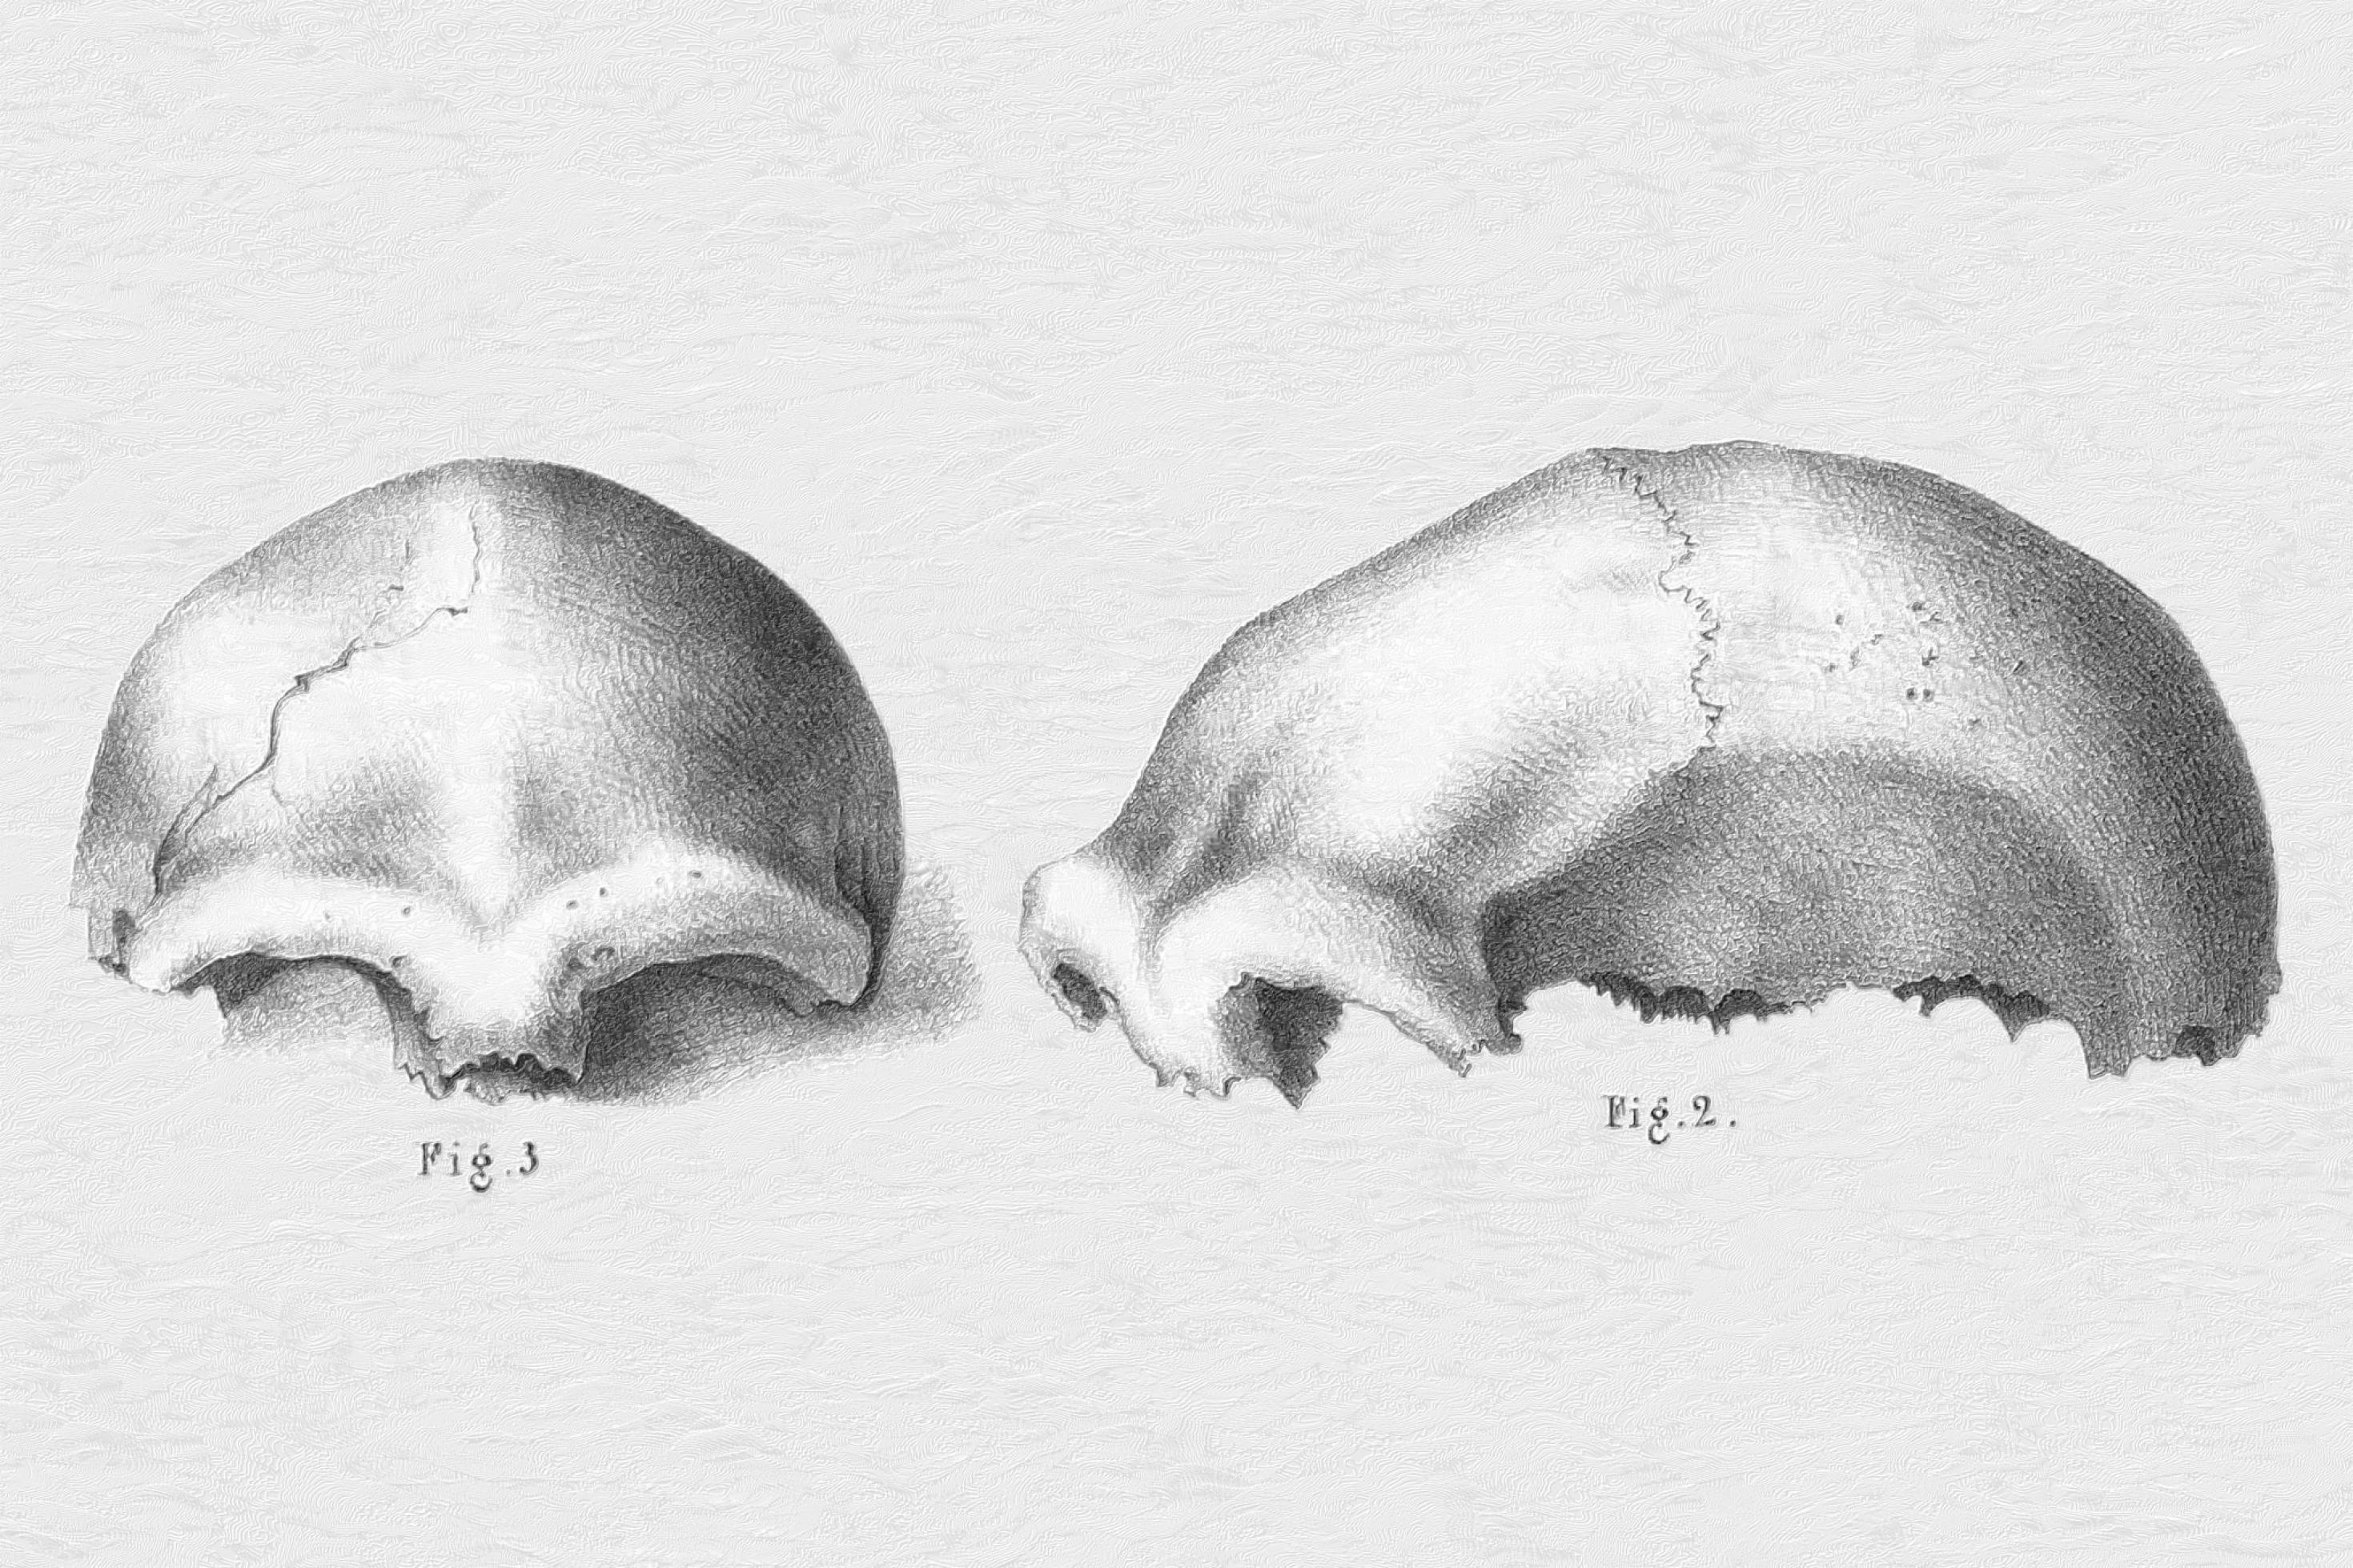 Zu sehen sind zwei historische Schwarzweiß-Zeichnungen vom oberen Teil eines Schädels. Links ist die Ansicht von vorne zu sehen, rechts die Ansicht von der Seite. Auffällig sind die sehr stark ausgeprägten Knochenwülste über den Augenhöhlen.